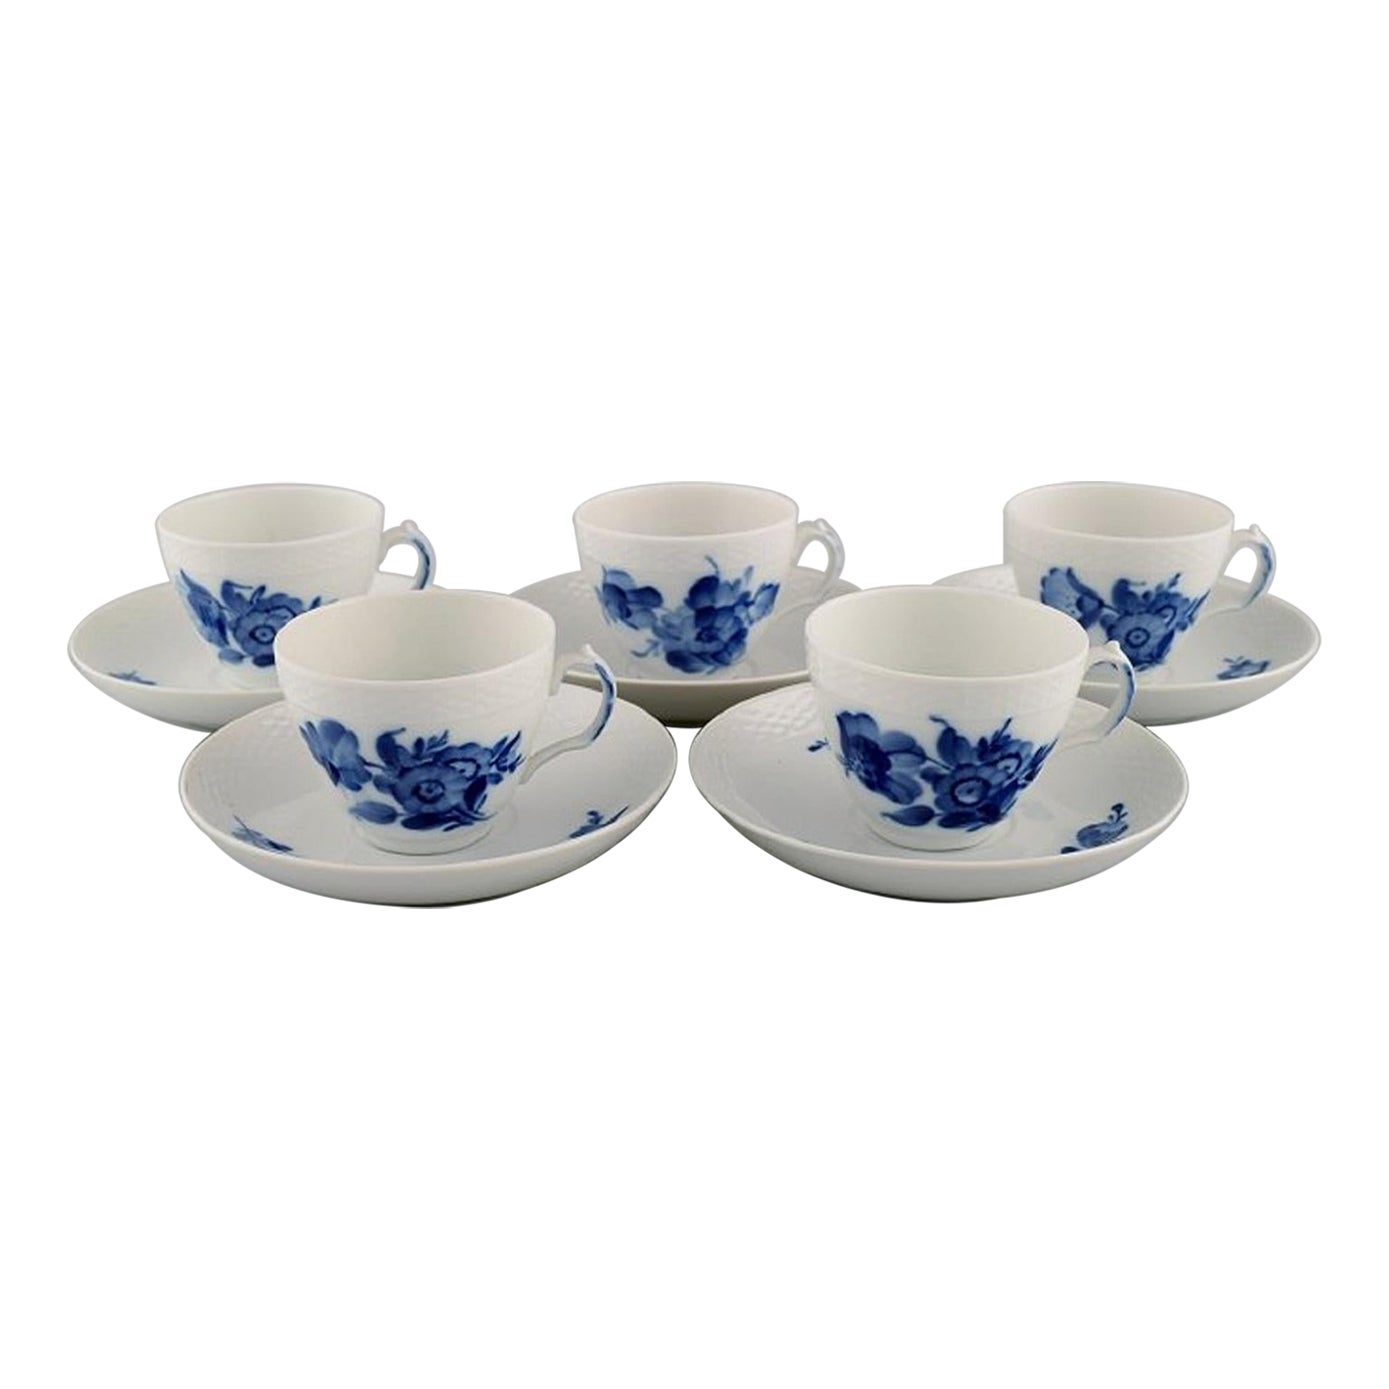 Cinq tasses à café Royal Copenhagen tressées à fleurs bleues avec soucoupes, milieu du 20e siècle